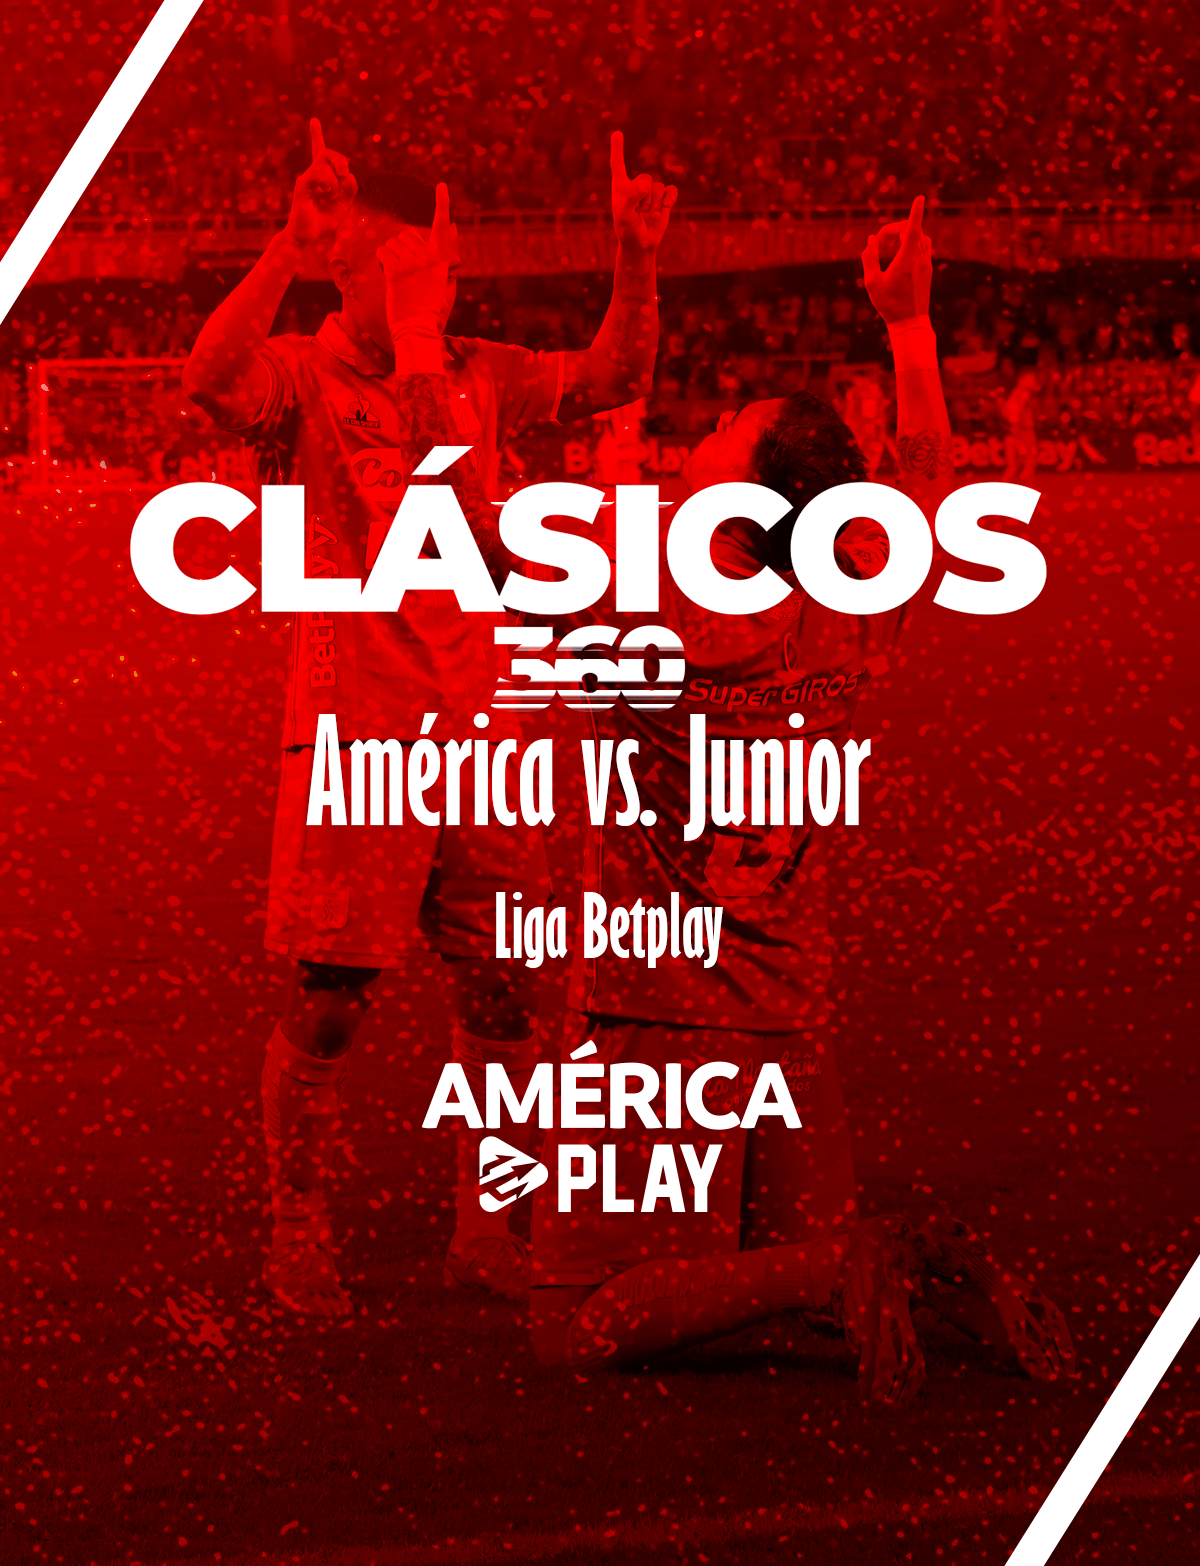 Clásicos 360 – América vs Junior